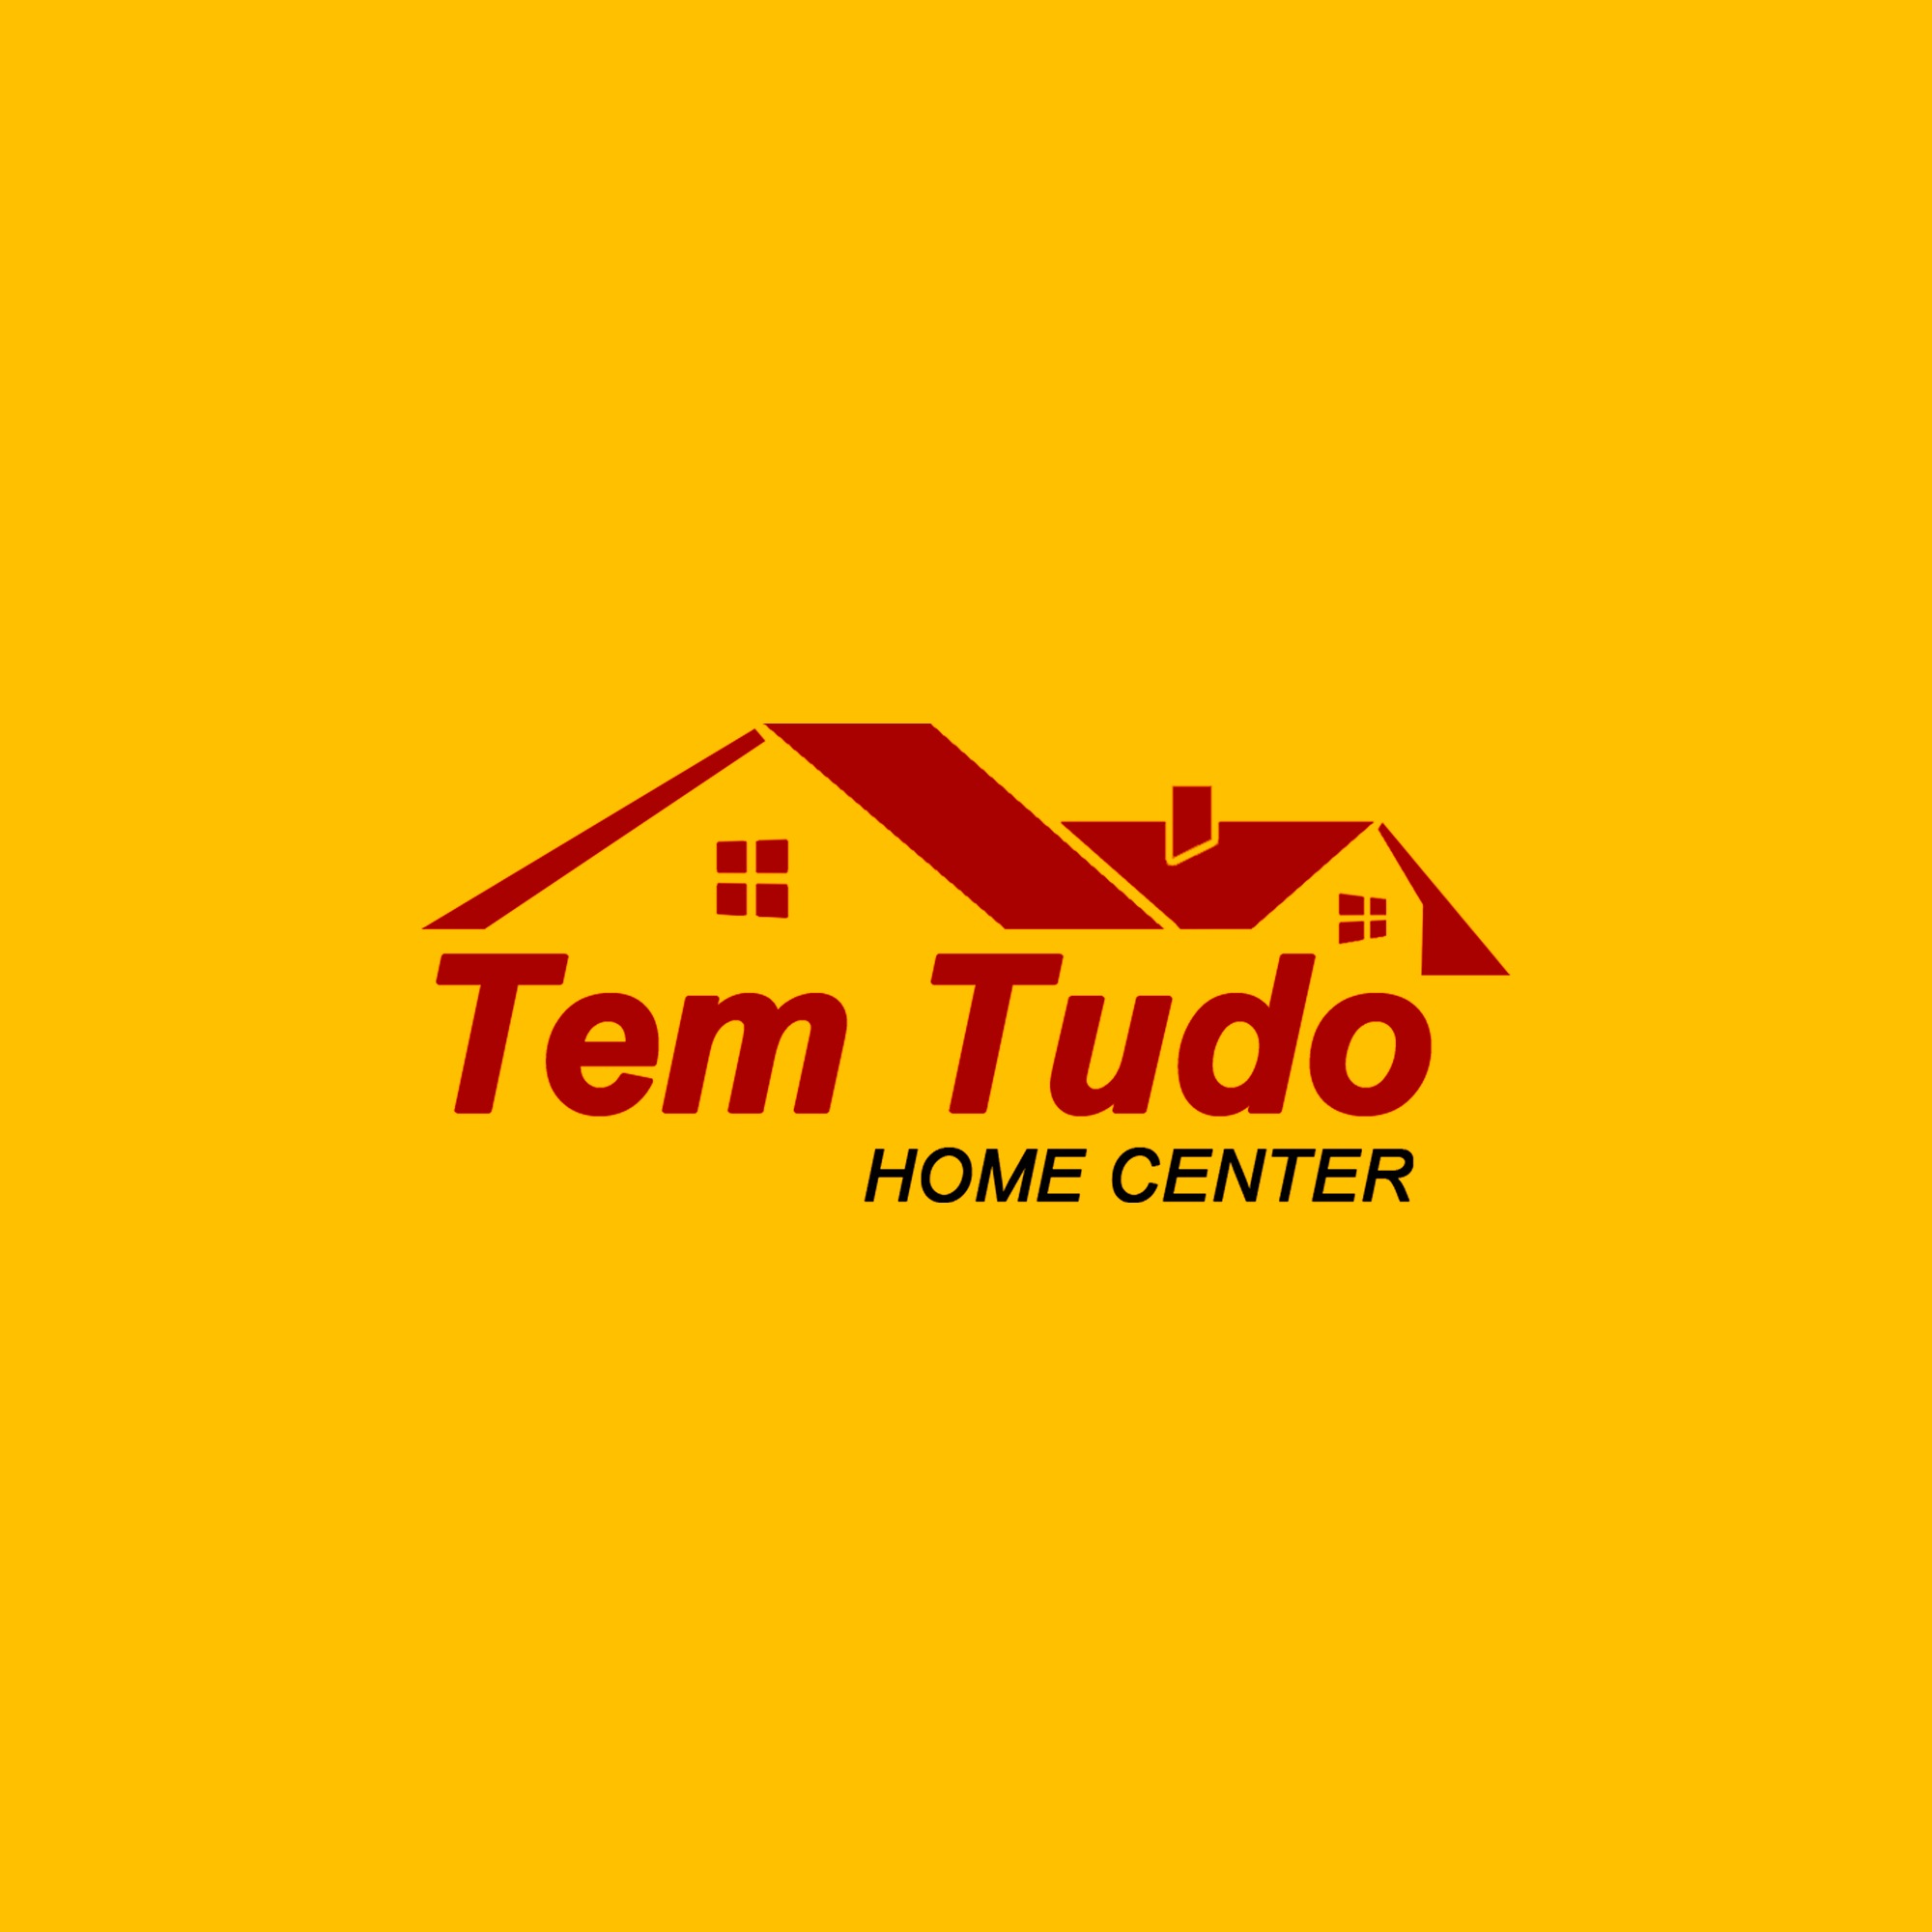 Tem Tudo Home Center Logo